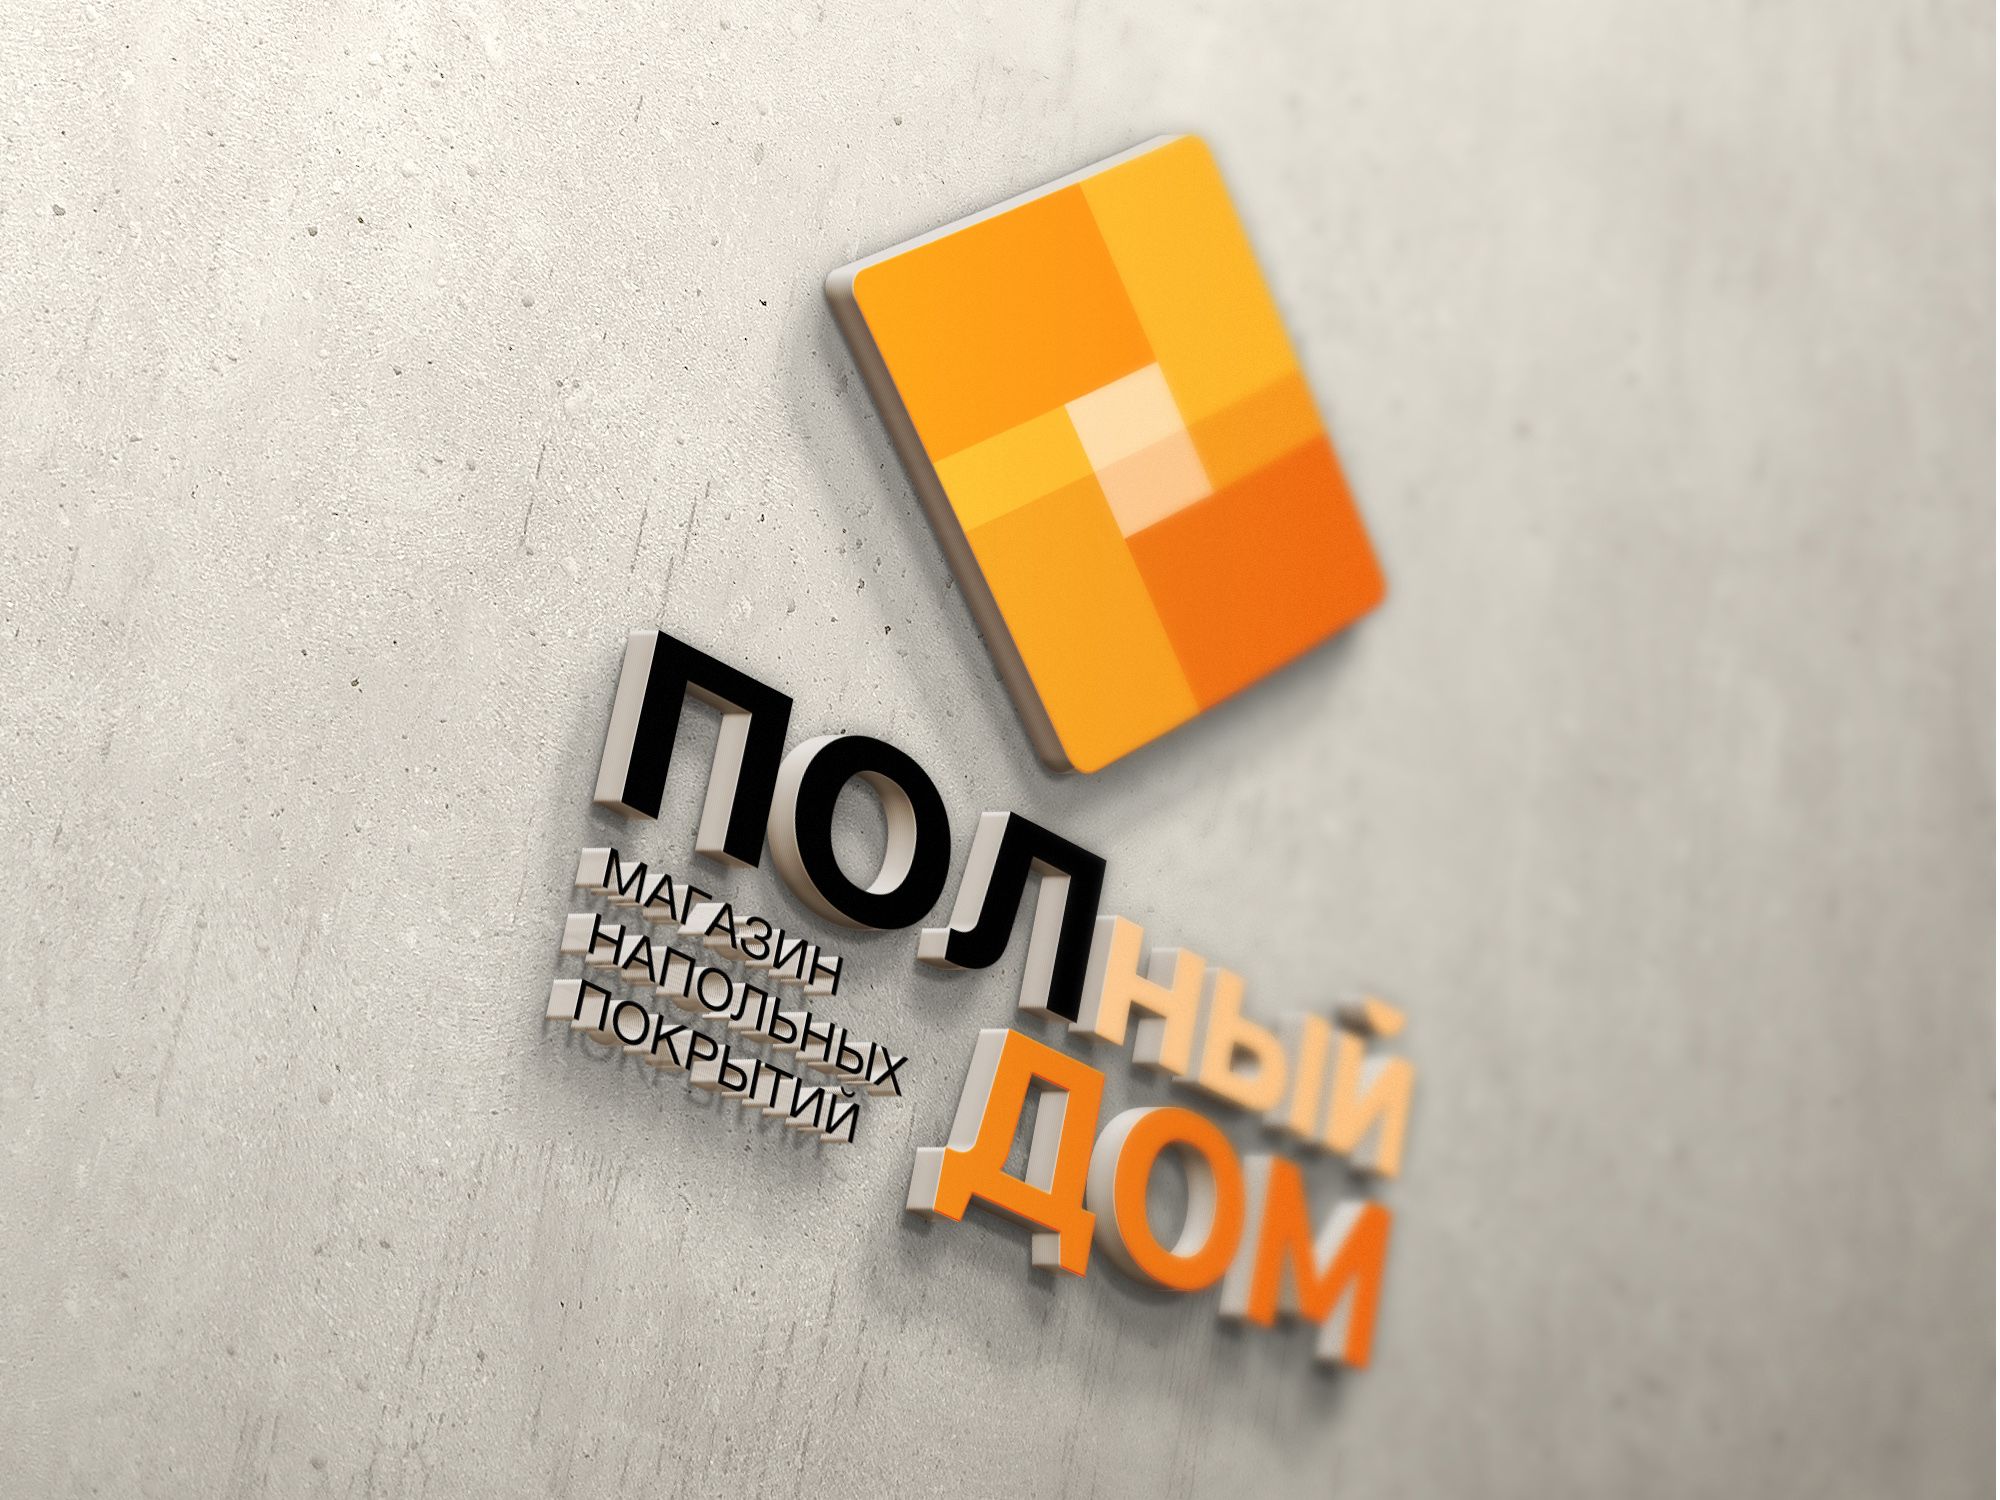 Логотип для ПОЛный Дом - дизайнер jen_budaragina